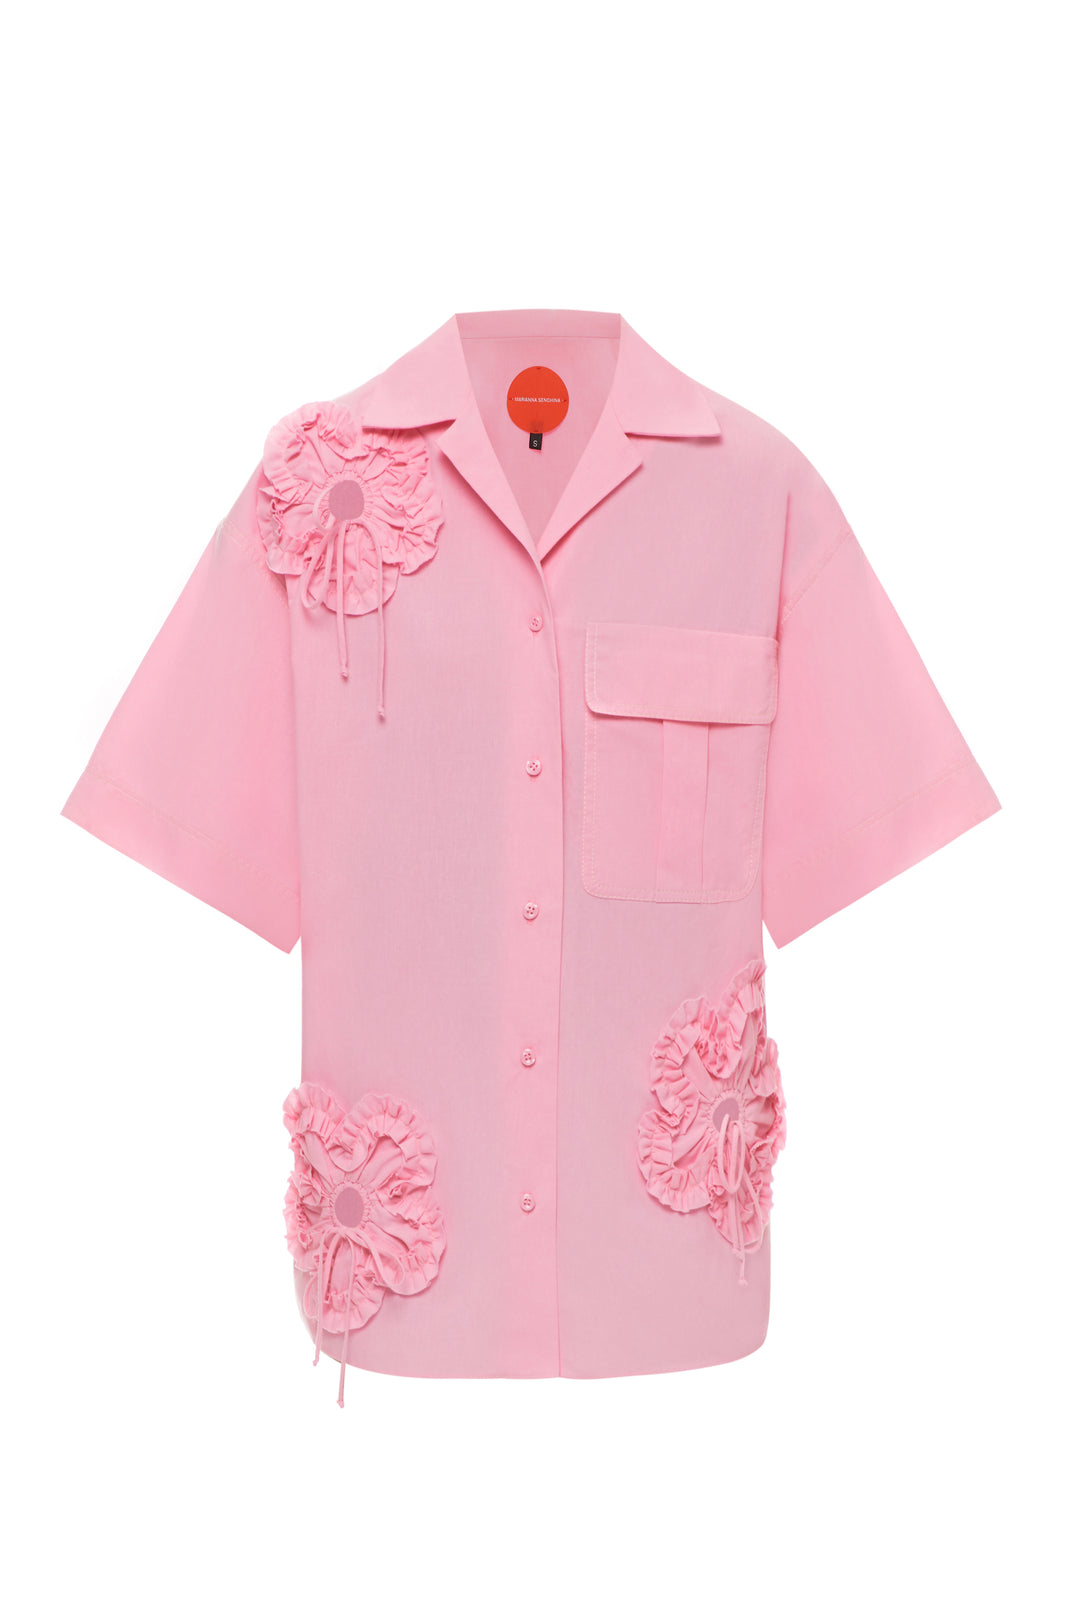 Pink Flower Power shirt